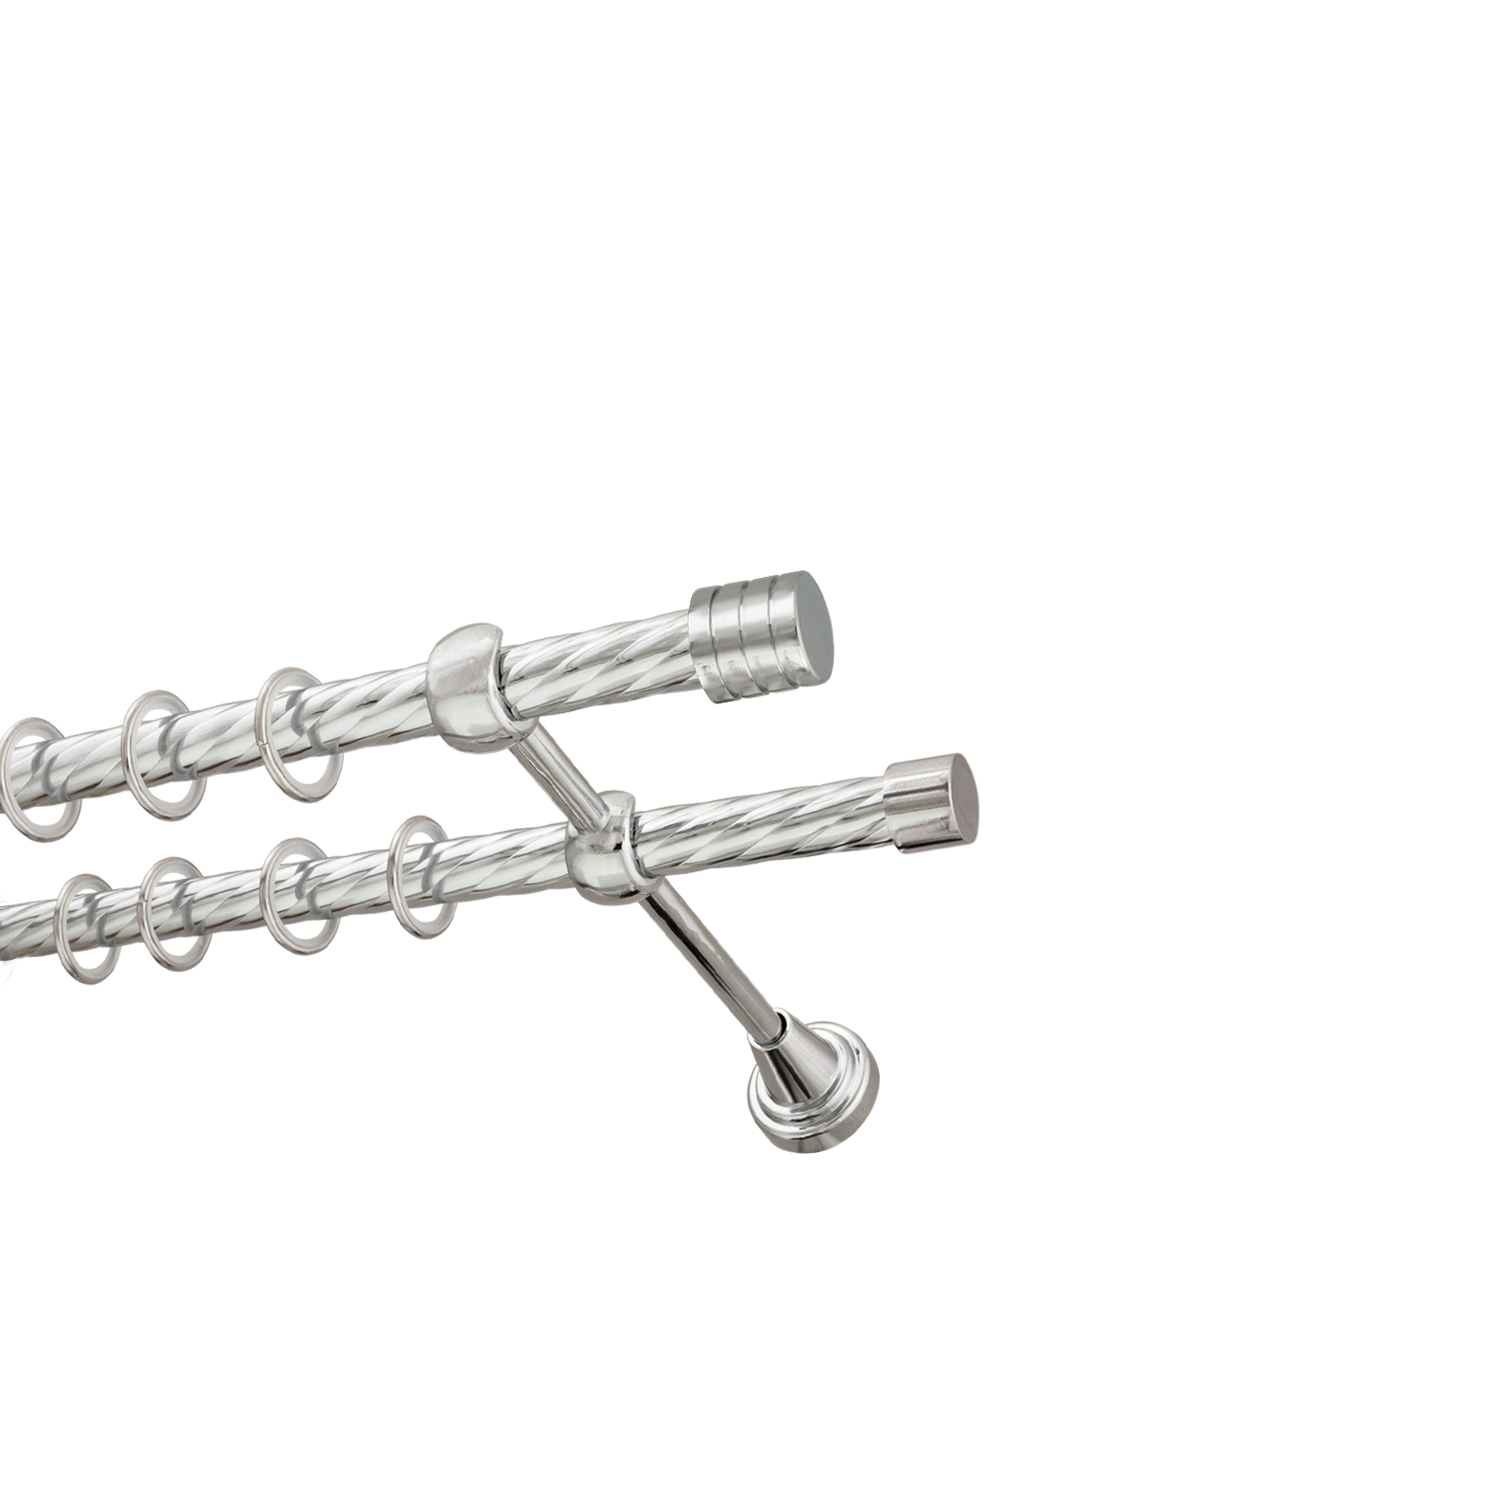 Металлический карниз для штор Подиум, двухрядный 16/16 мм, серебро, витая штанга, длина 180 см - фото Wikidecor.ru